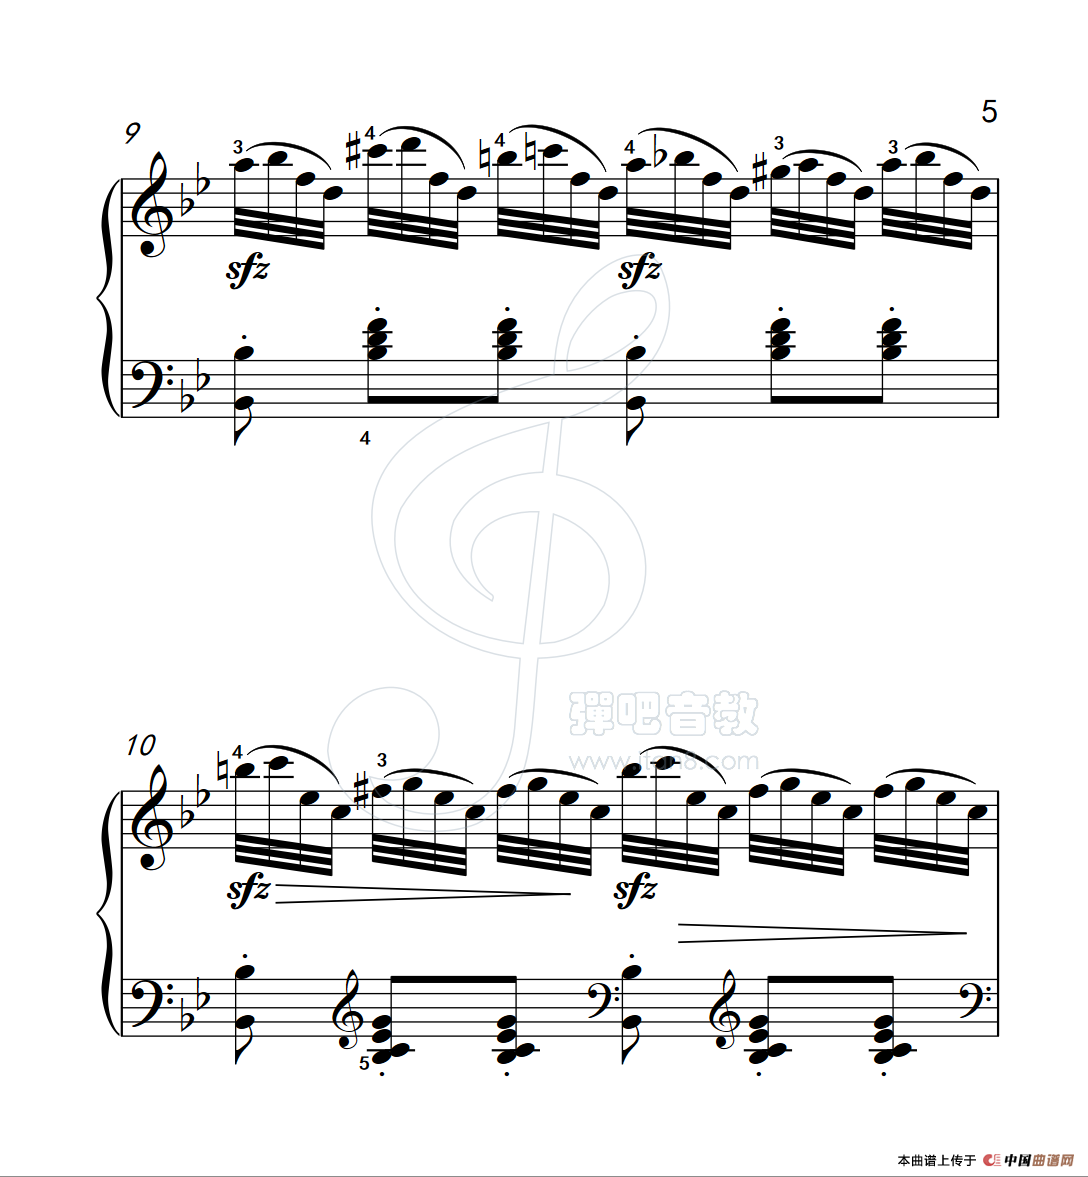 《练习曲 21》钢琴曲谱图分享